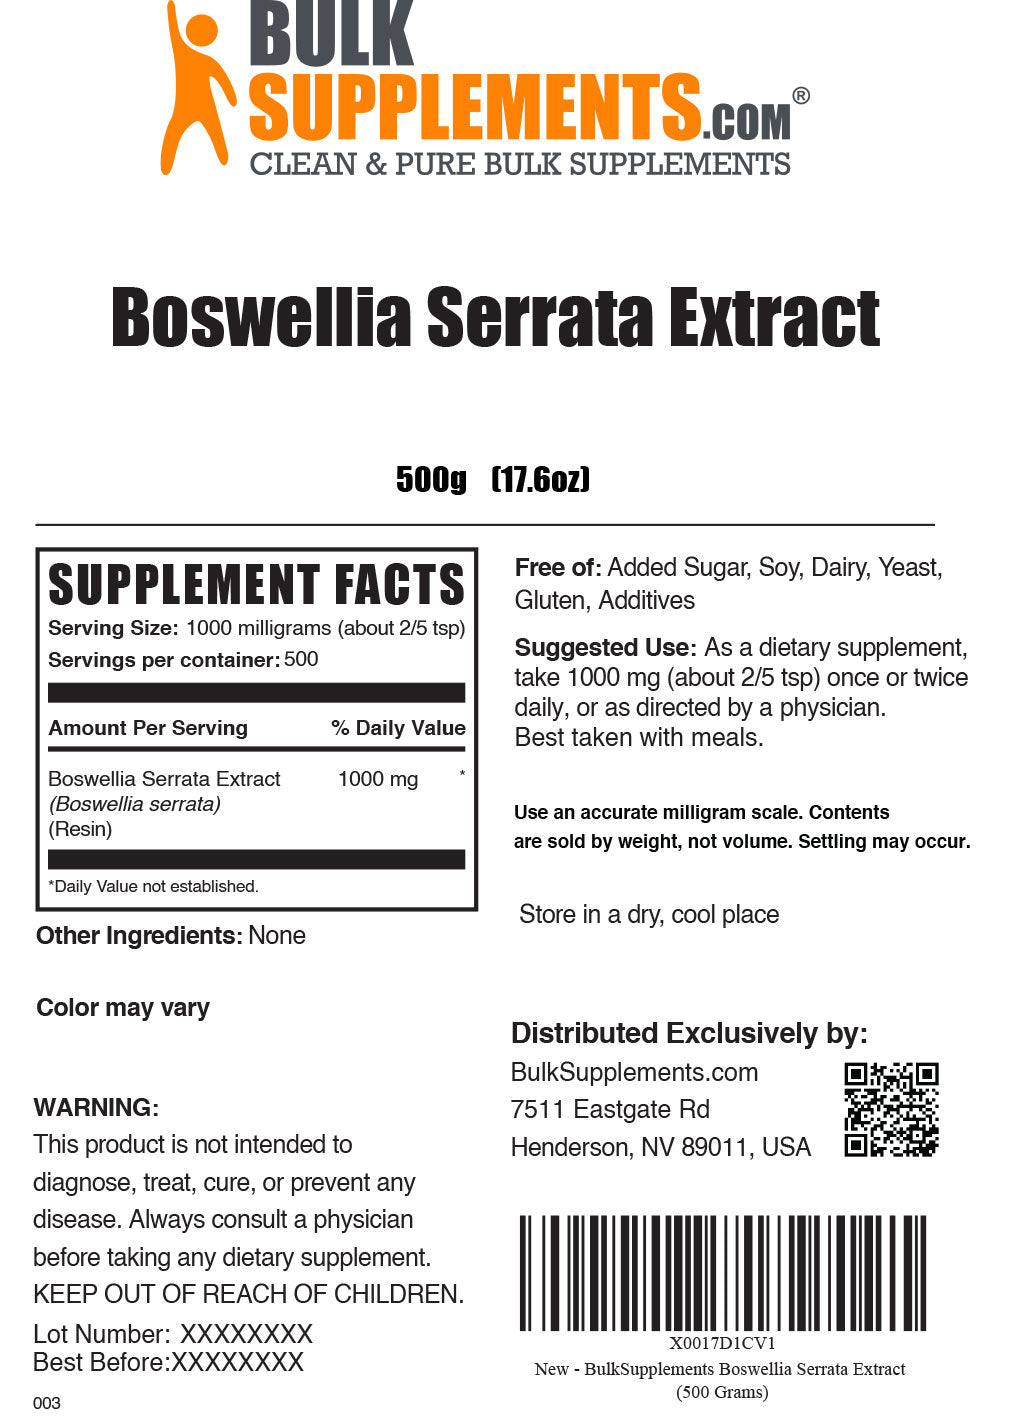 500g Boswellia Serrata Supplement Facts Label